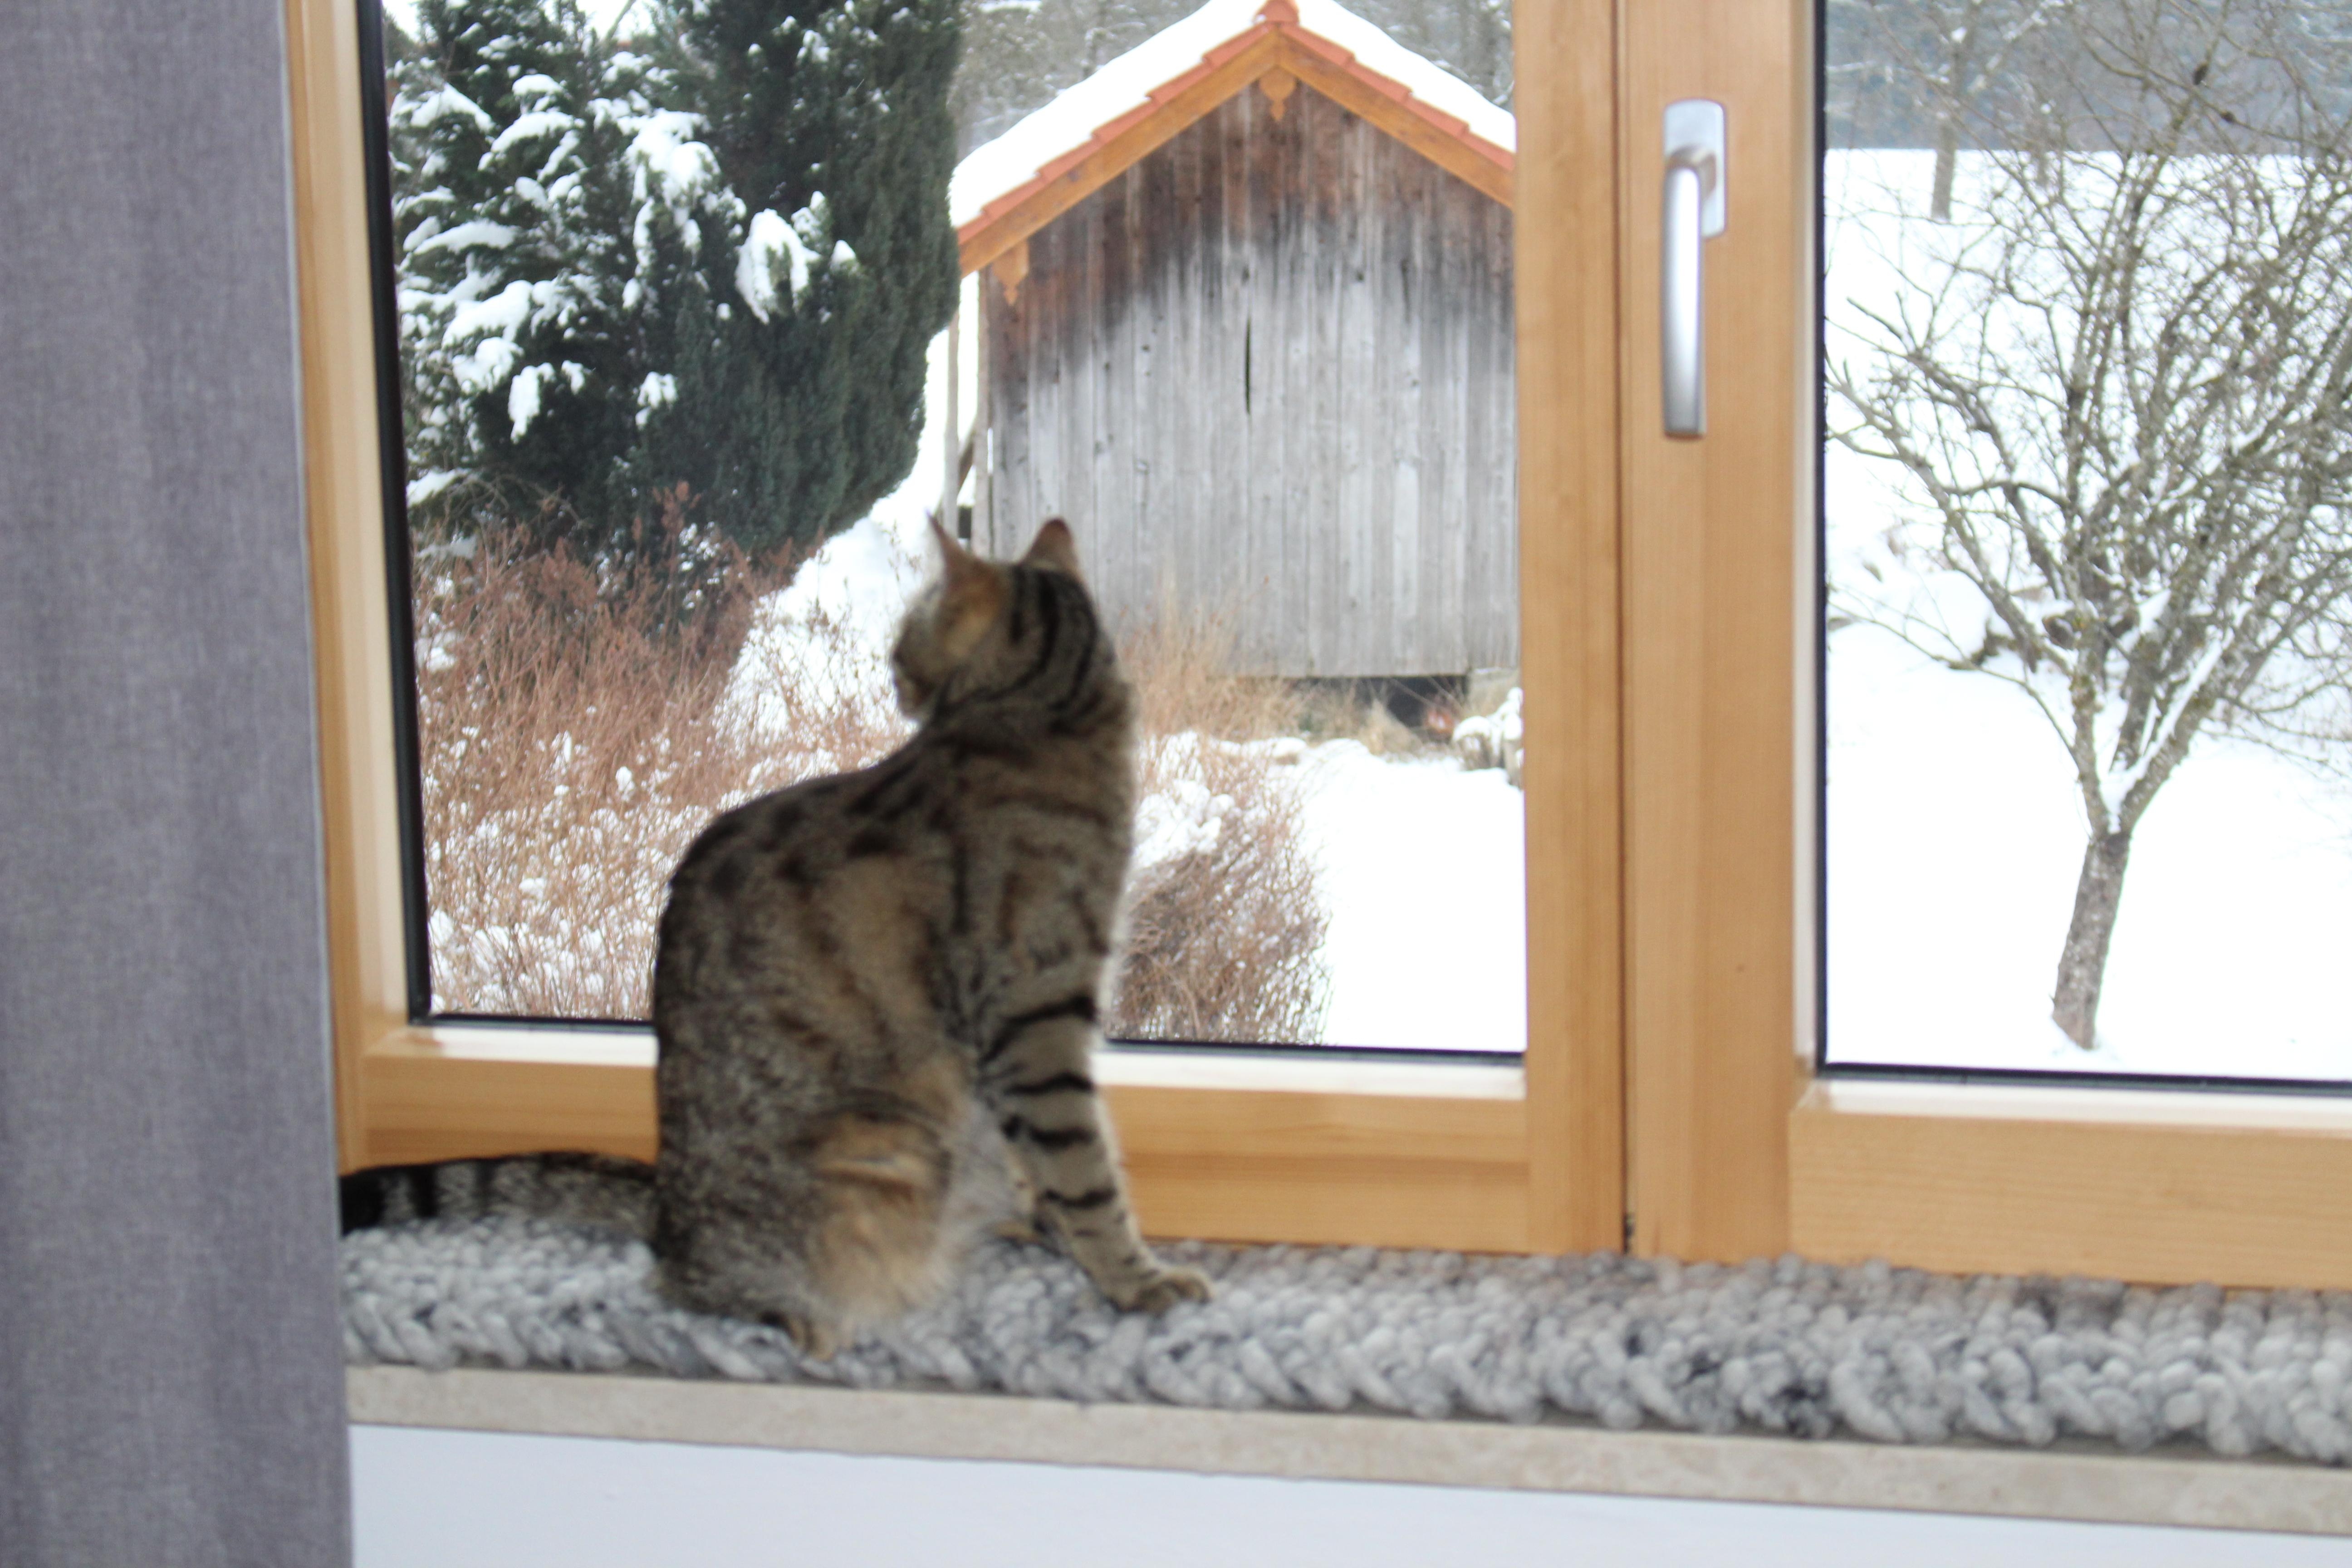 kuschelige "Schöne Aussicht" für den Lieblingsplatz am Fenster #katze  #designkatzenmöbel #wollkissen